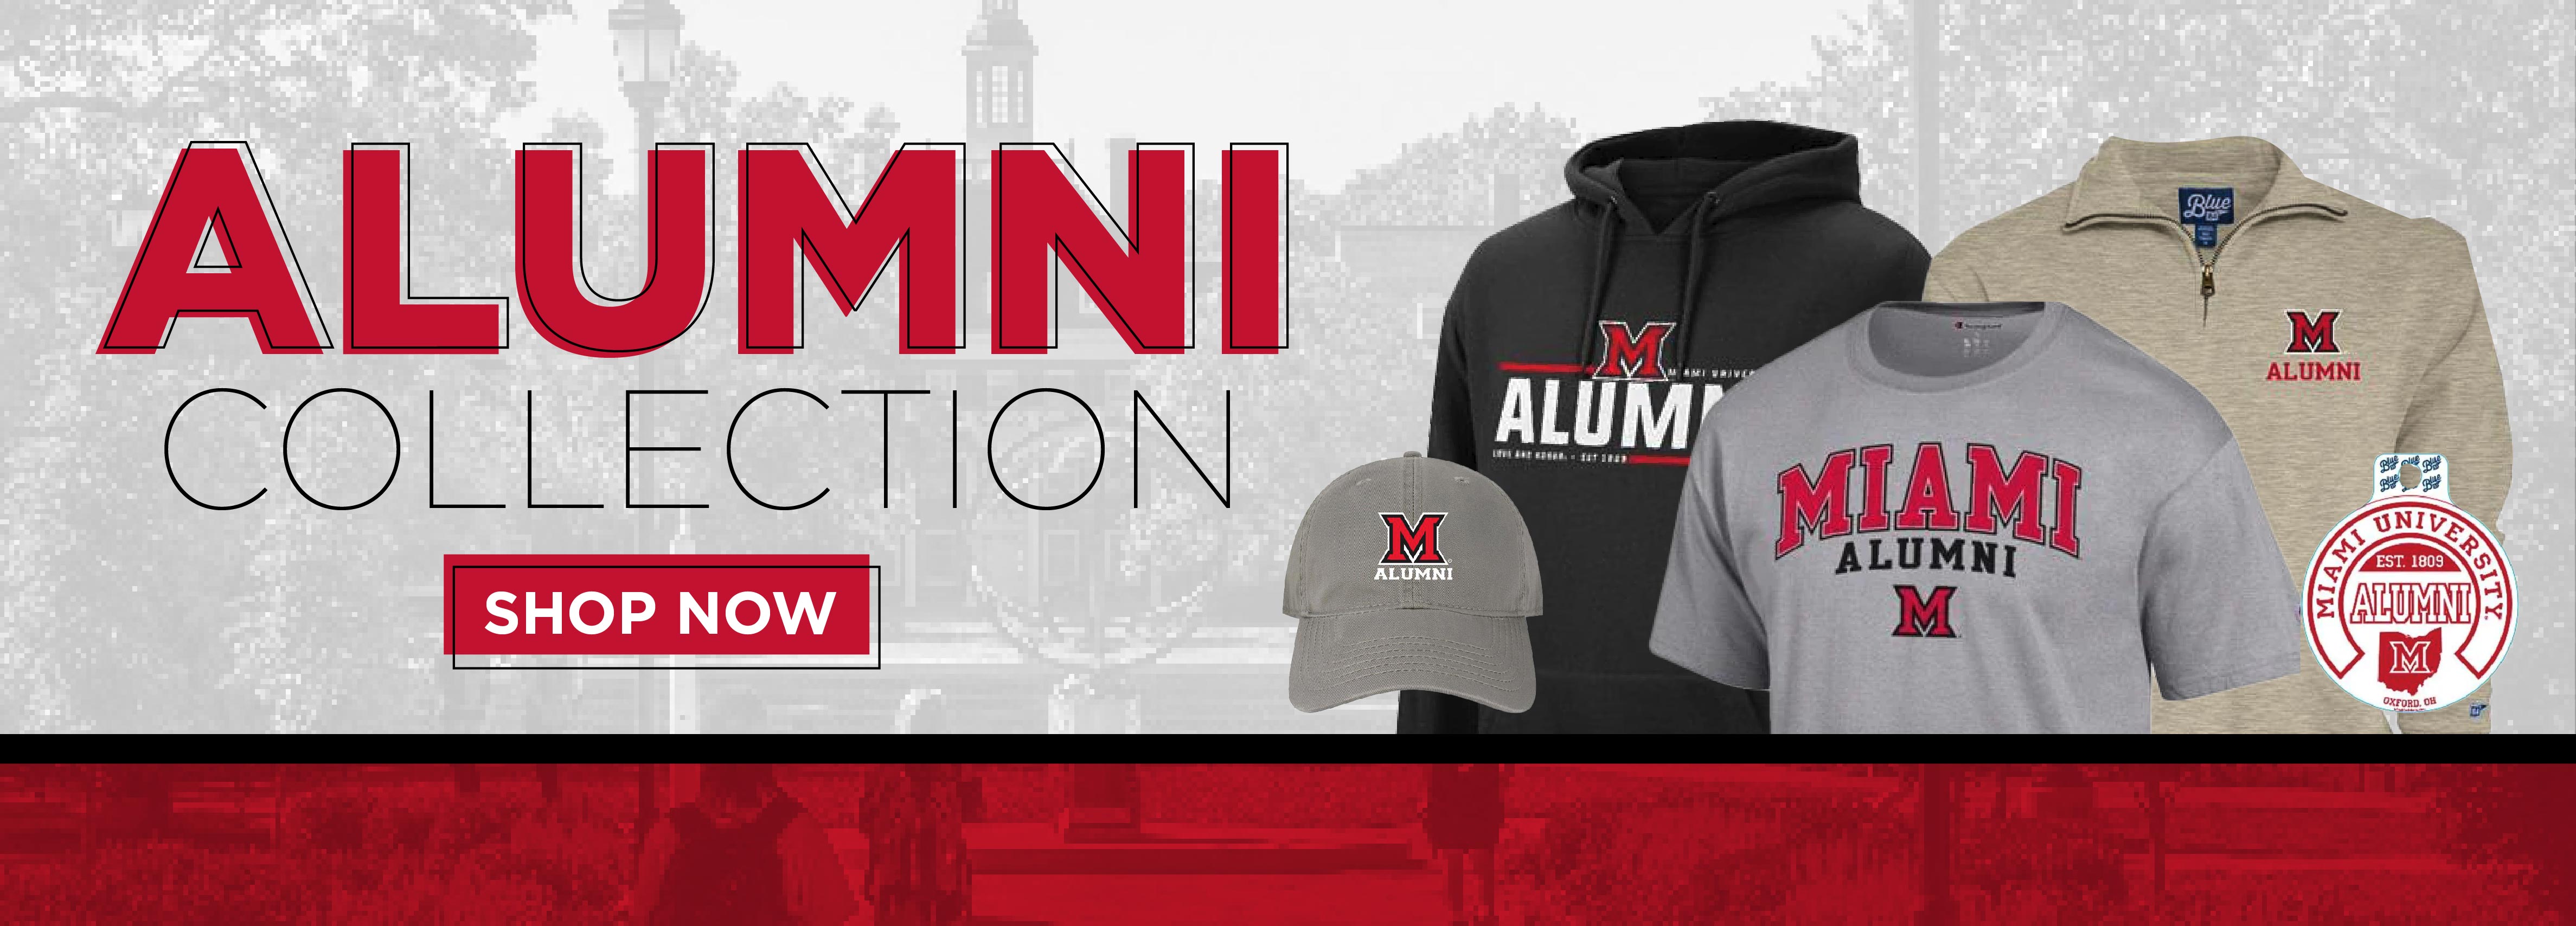 Alumni Collection. shop now